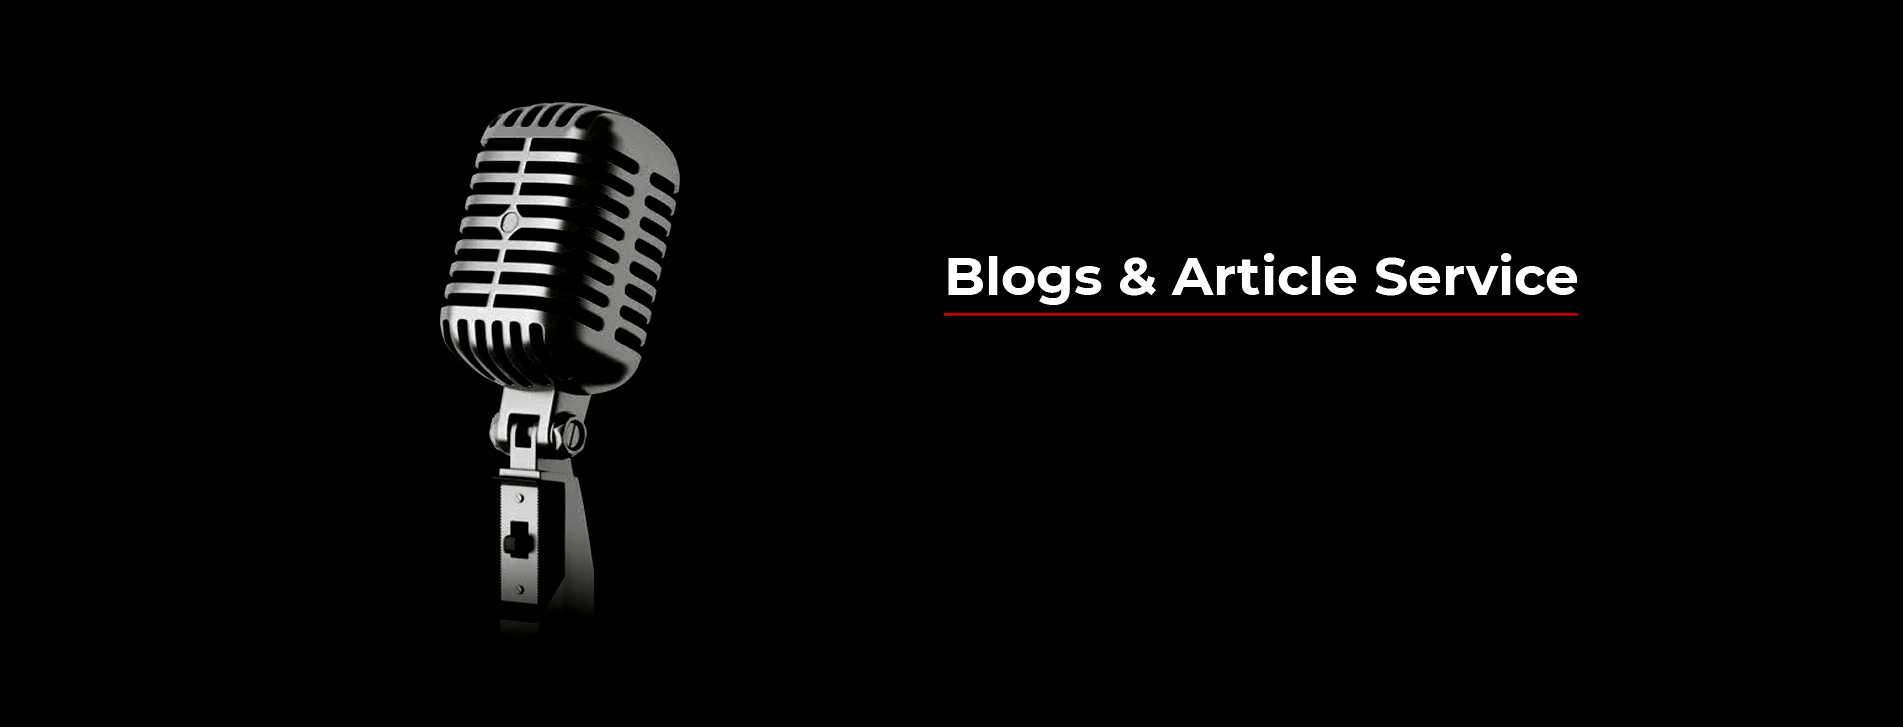 Blogs & Article Service